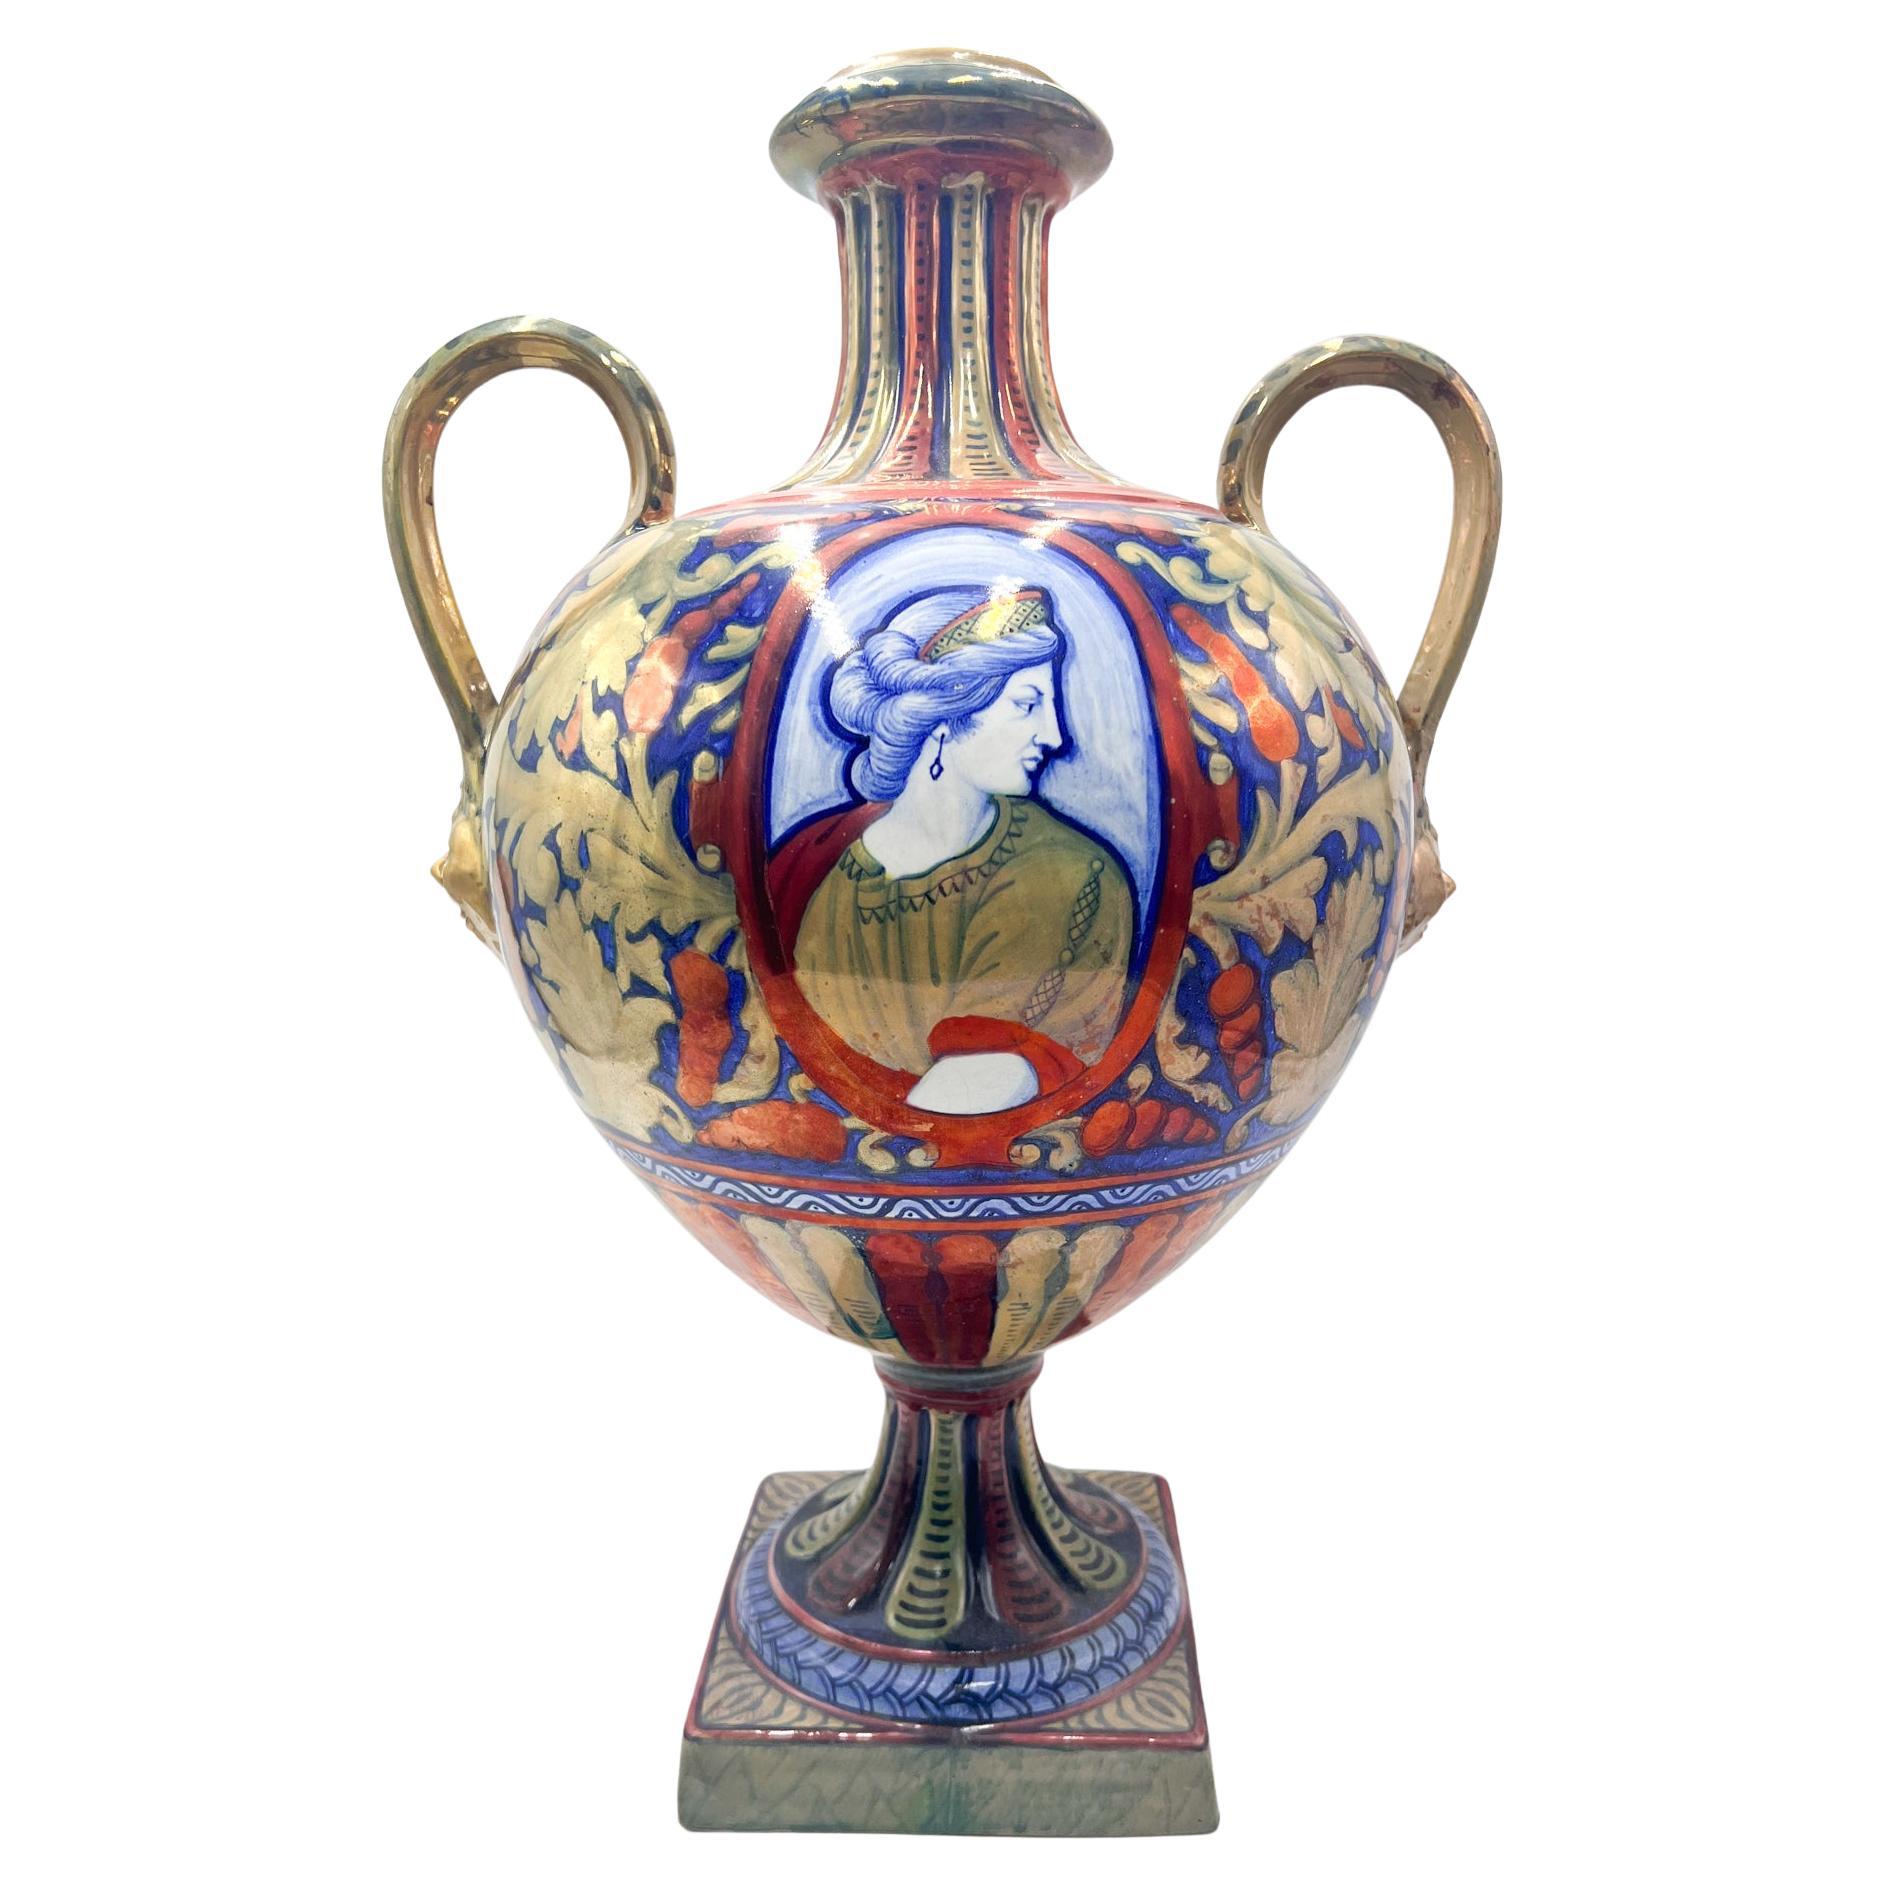 Keramikvase des frühen 20. Jahrhunderts von Gualdo Tadino